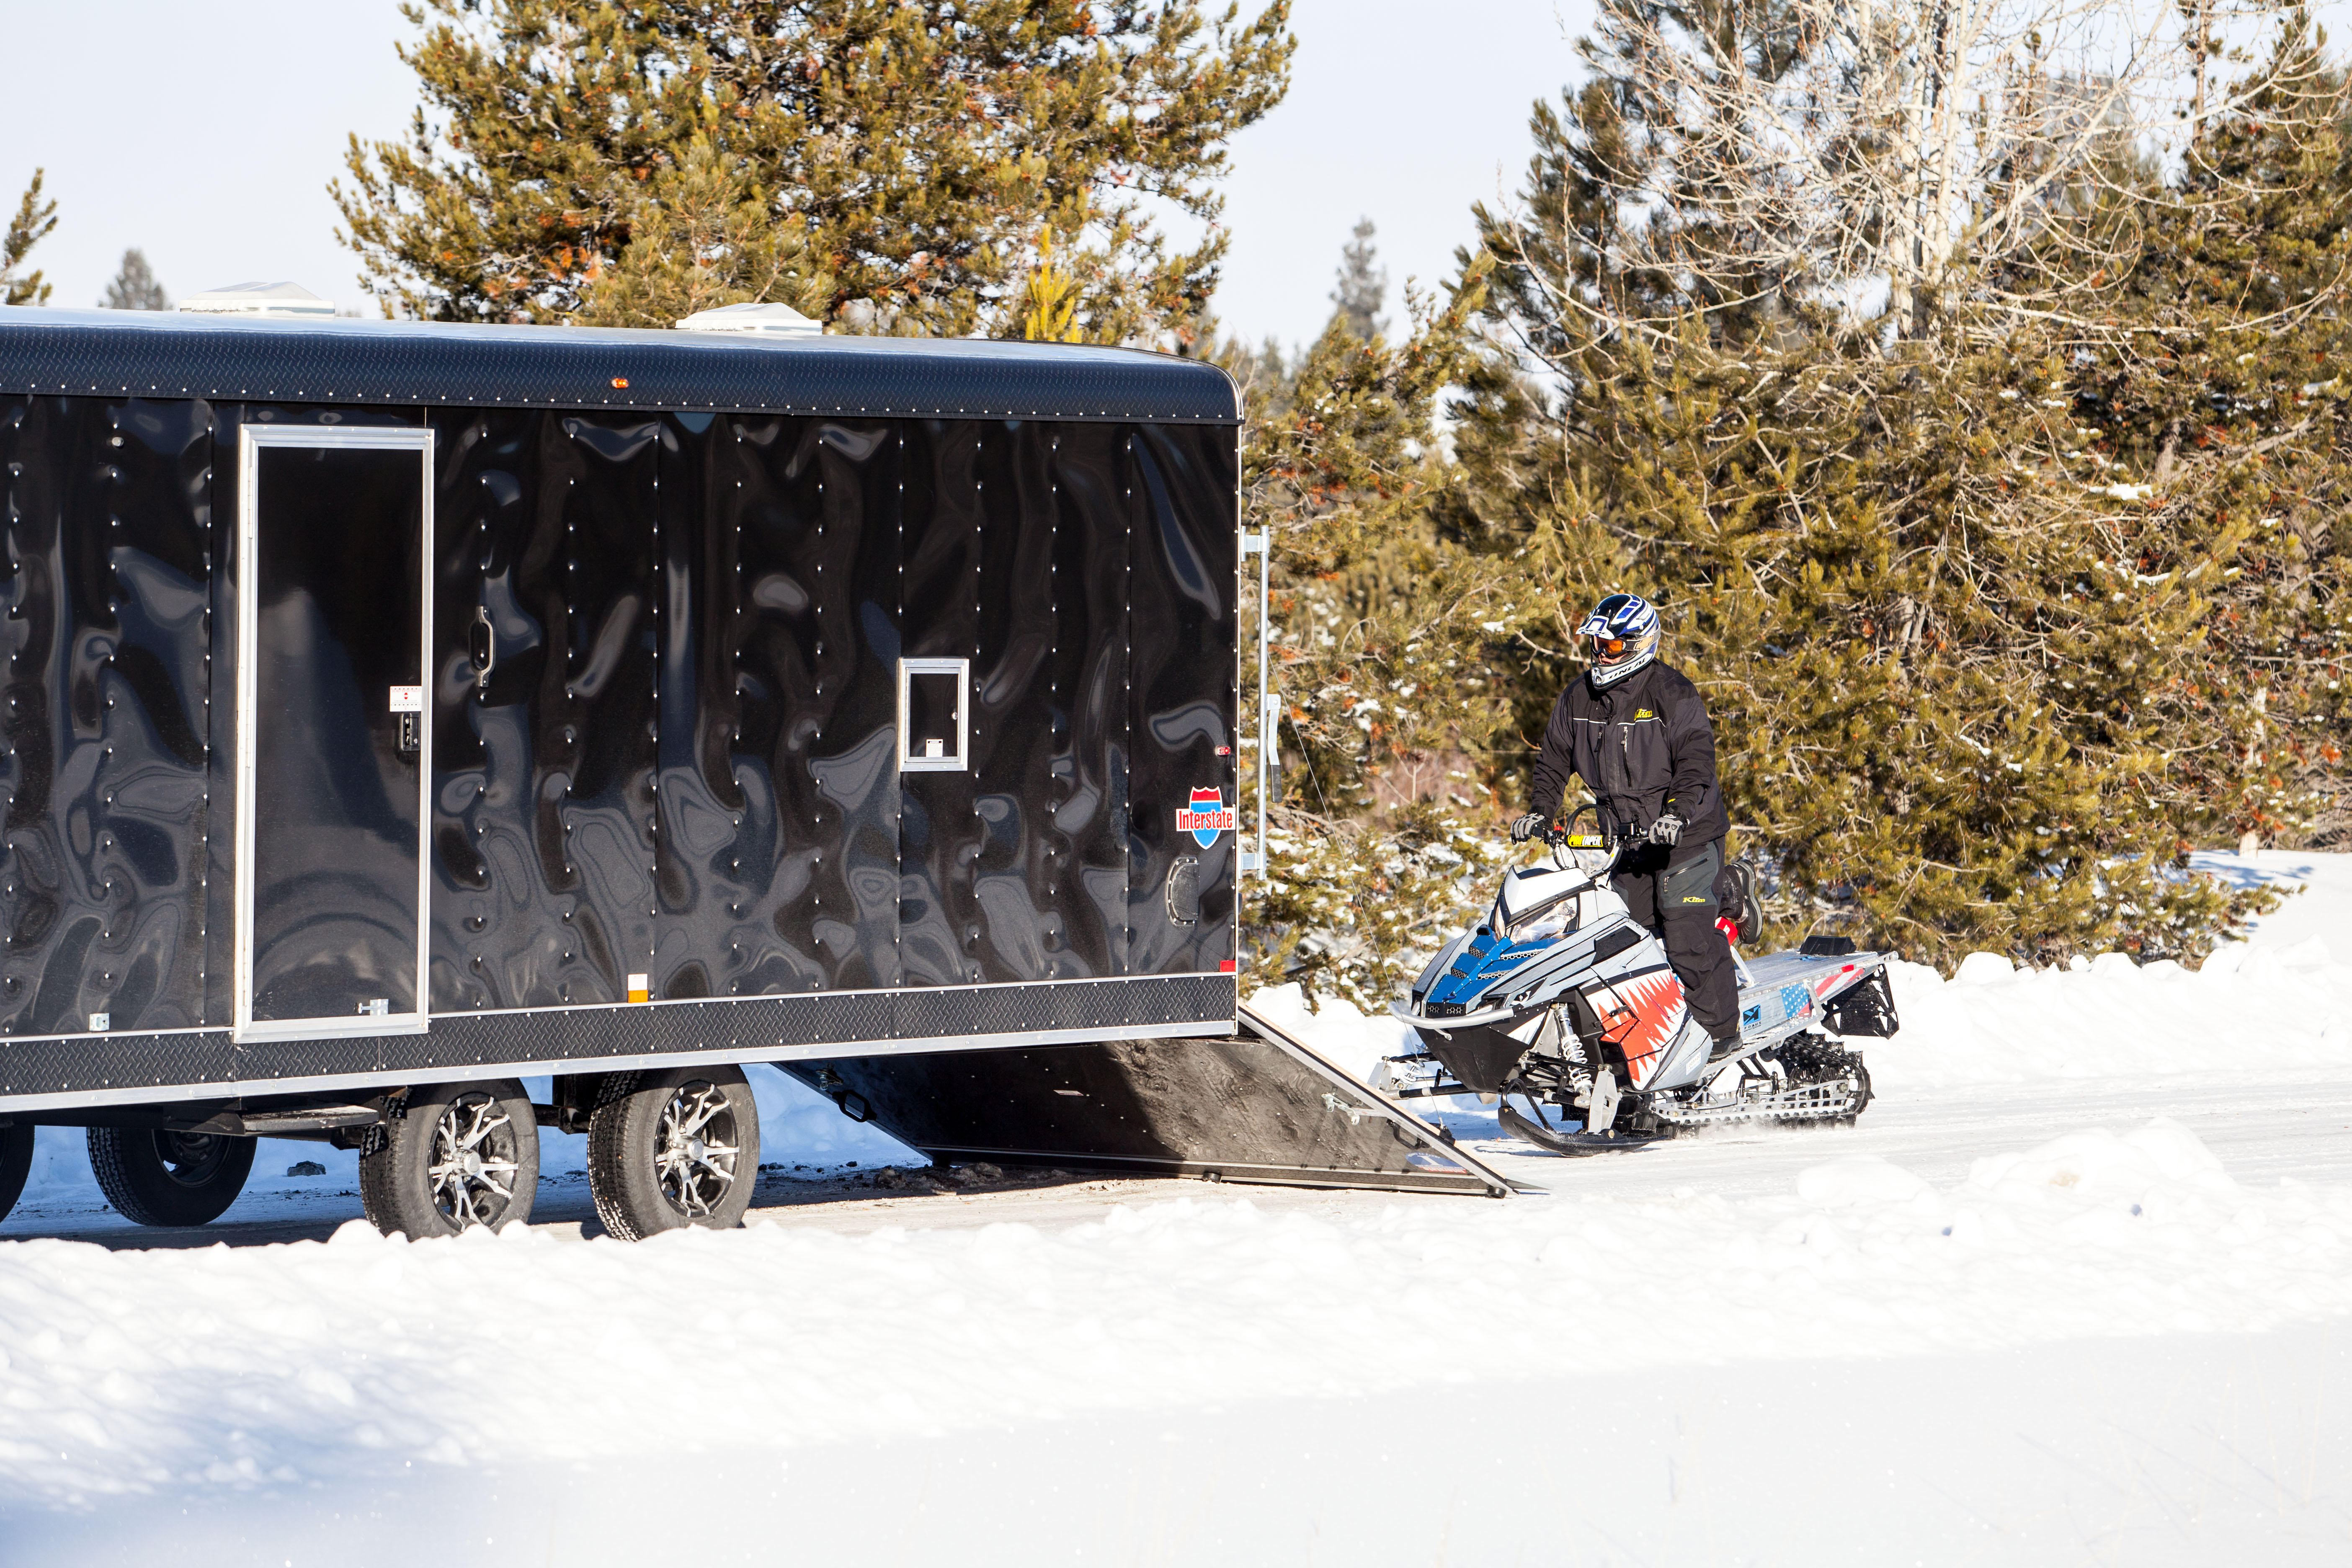 Snowsport TrailersPlus Fort Collins (970)818-0670